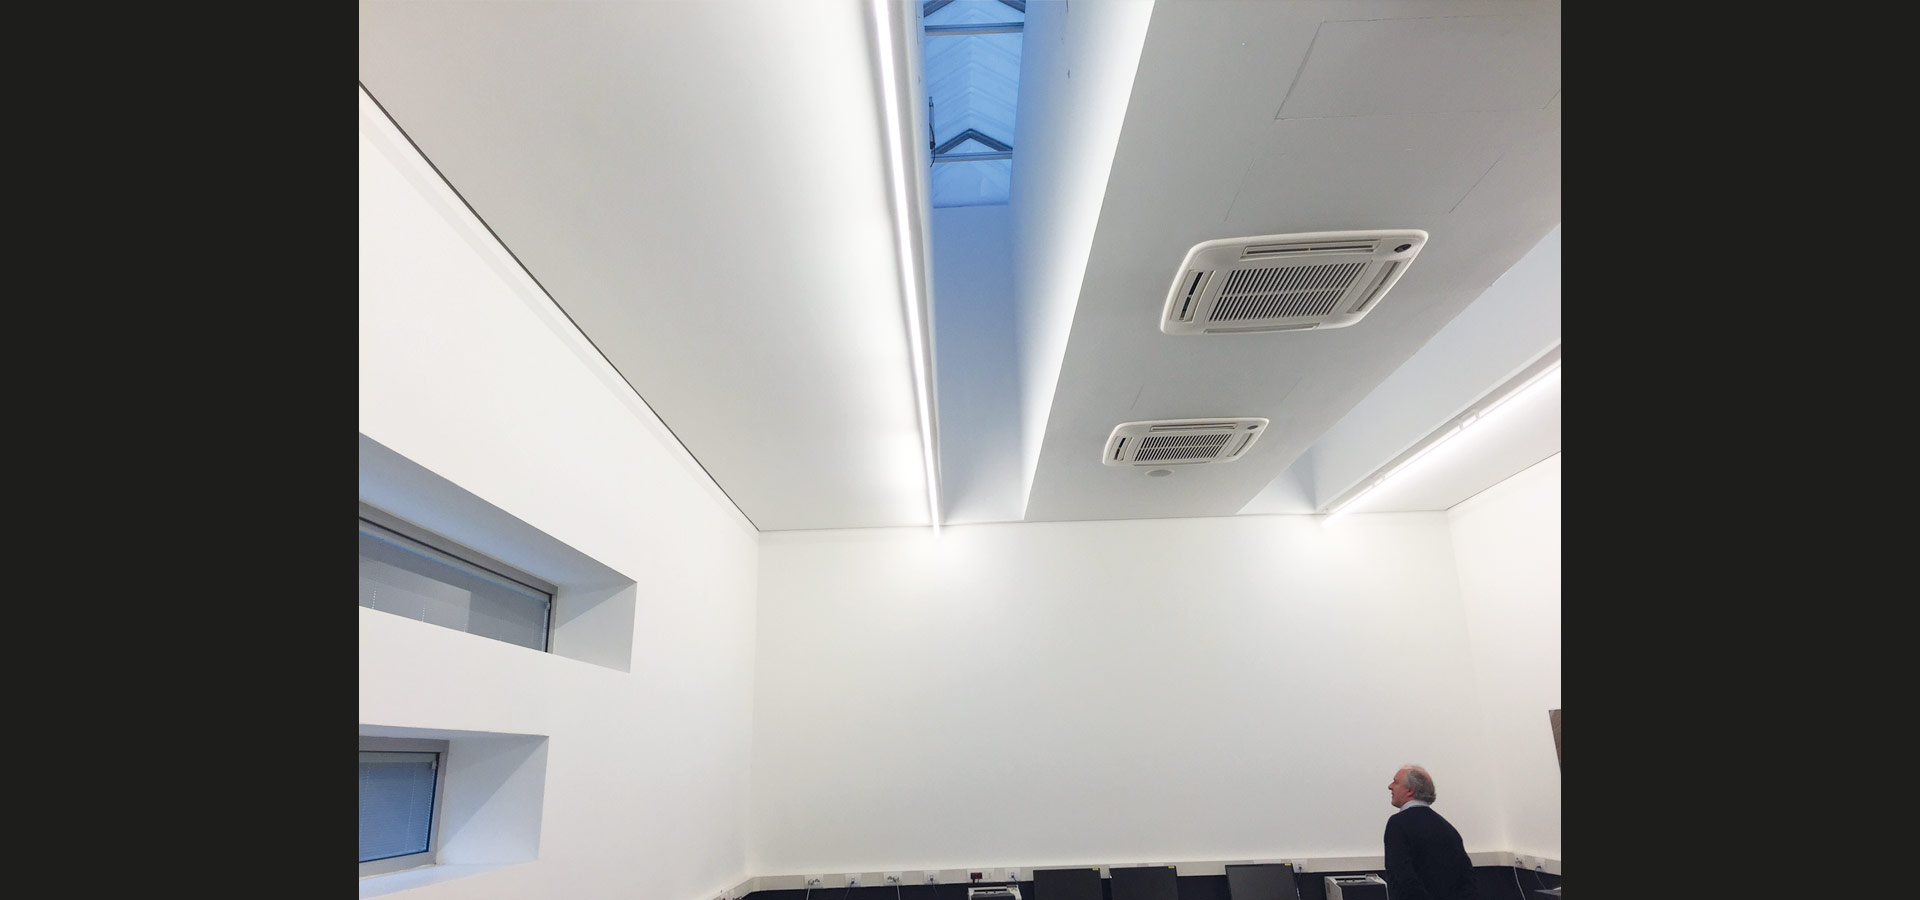 Beleuchtung Schulungsraum LED Leuchte Luxsystem